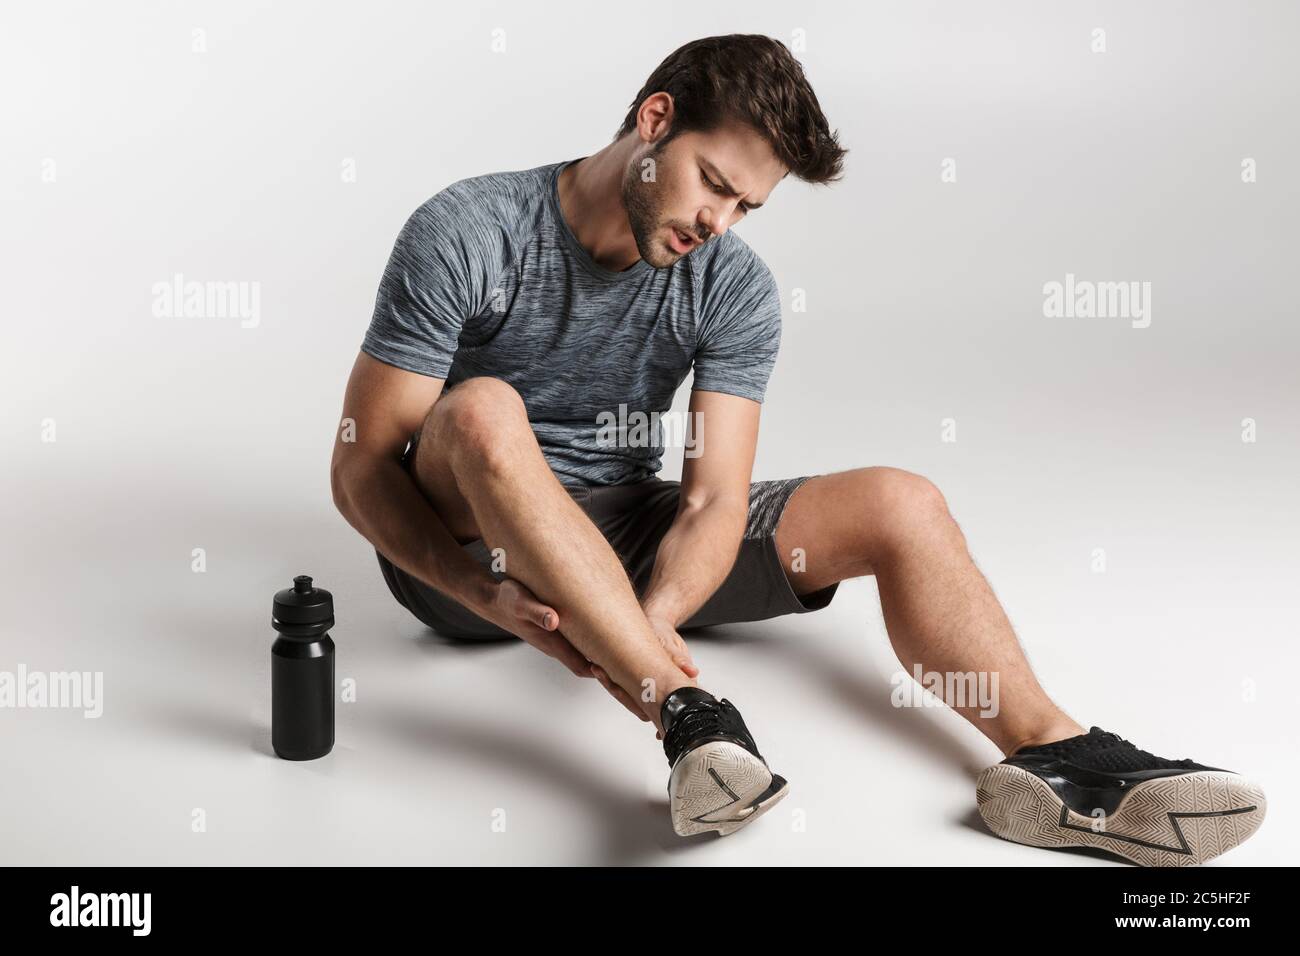 Jeune sportif fatigué reposant sur un sol isolé sur fond gris, souffrant de douleurs à la cheville Banque D'Images